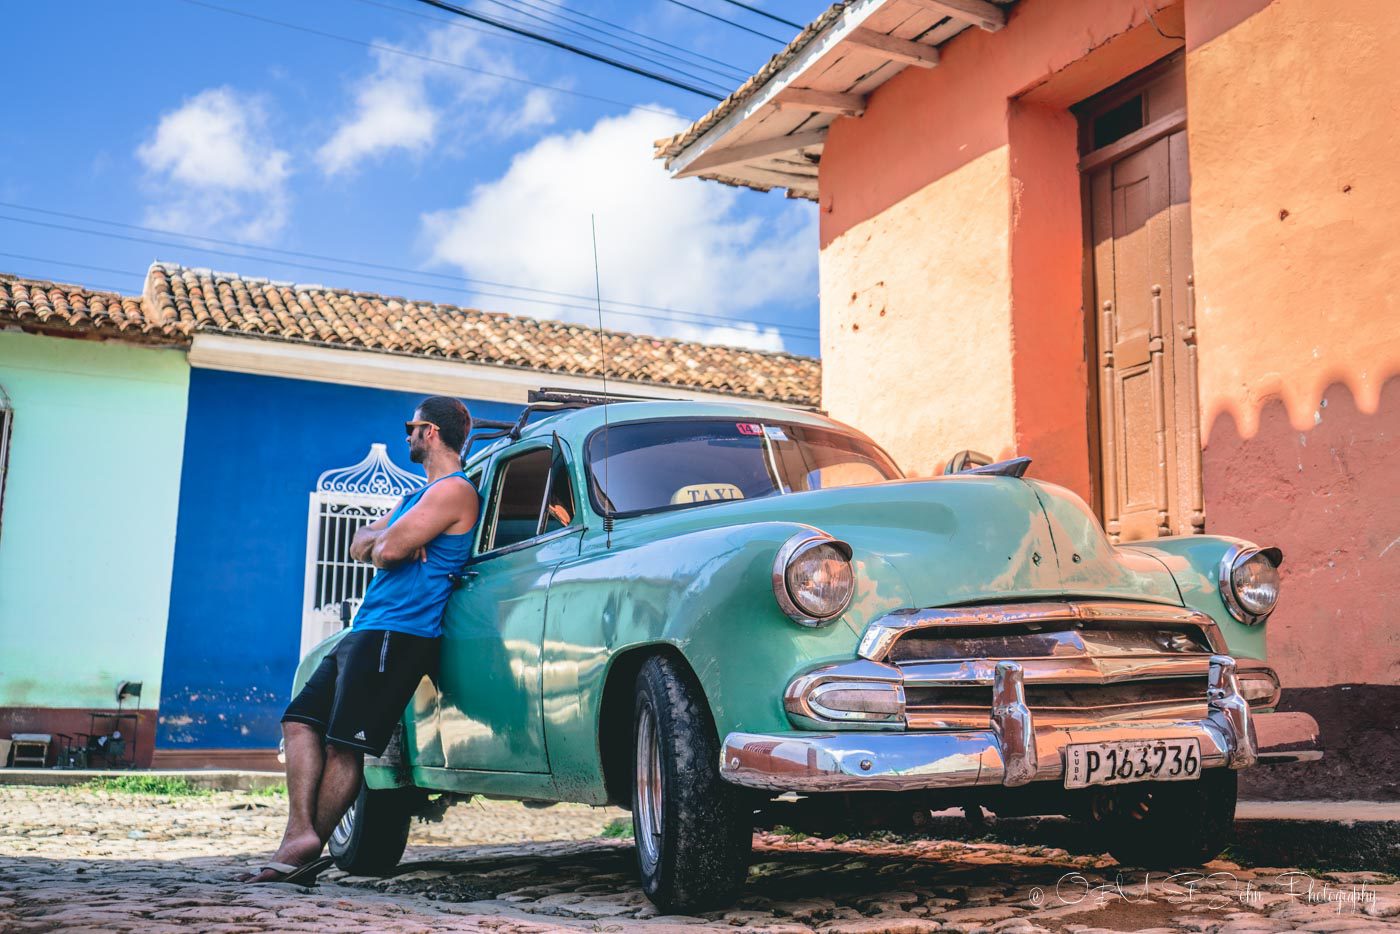 Colectivo Taxi in Trinidad Cuba